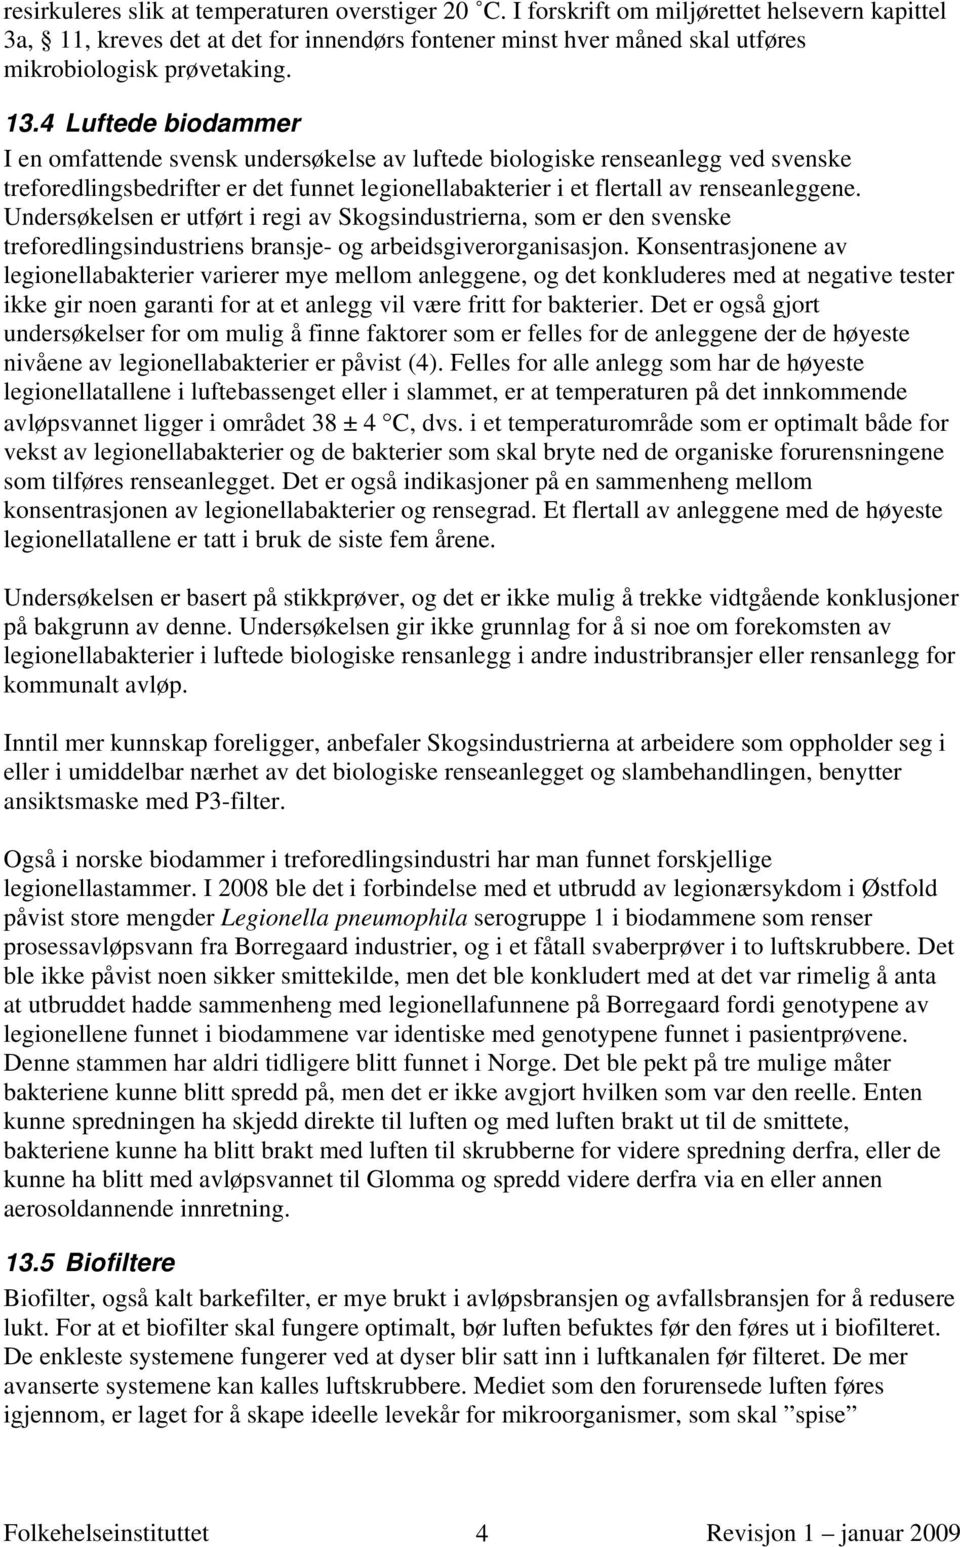 4 Luftede biodammer I en omfattende svensk undersøkelse av luftede biologiske renseanlegg ved svenske treforedlingsbedrifter er det funnet legionellabakterier i et flertall av renseanleggene.